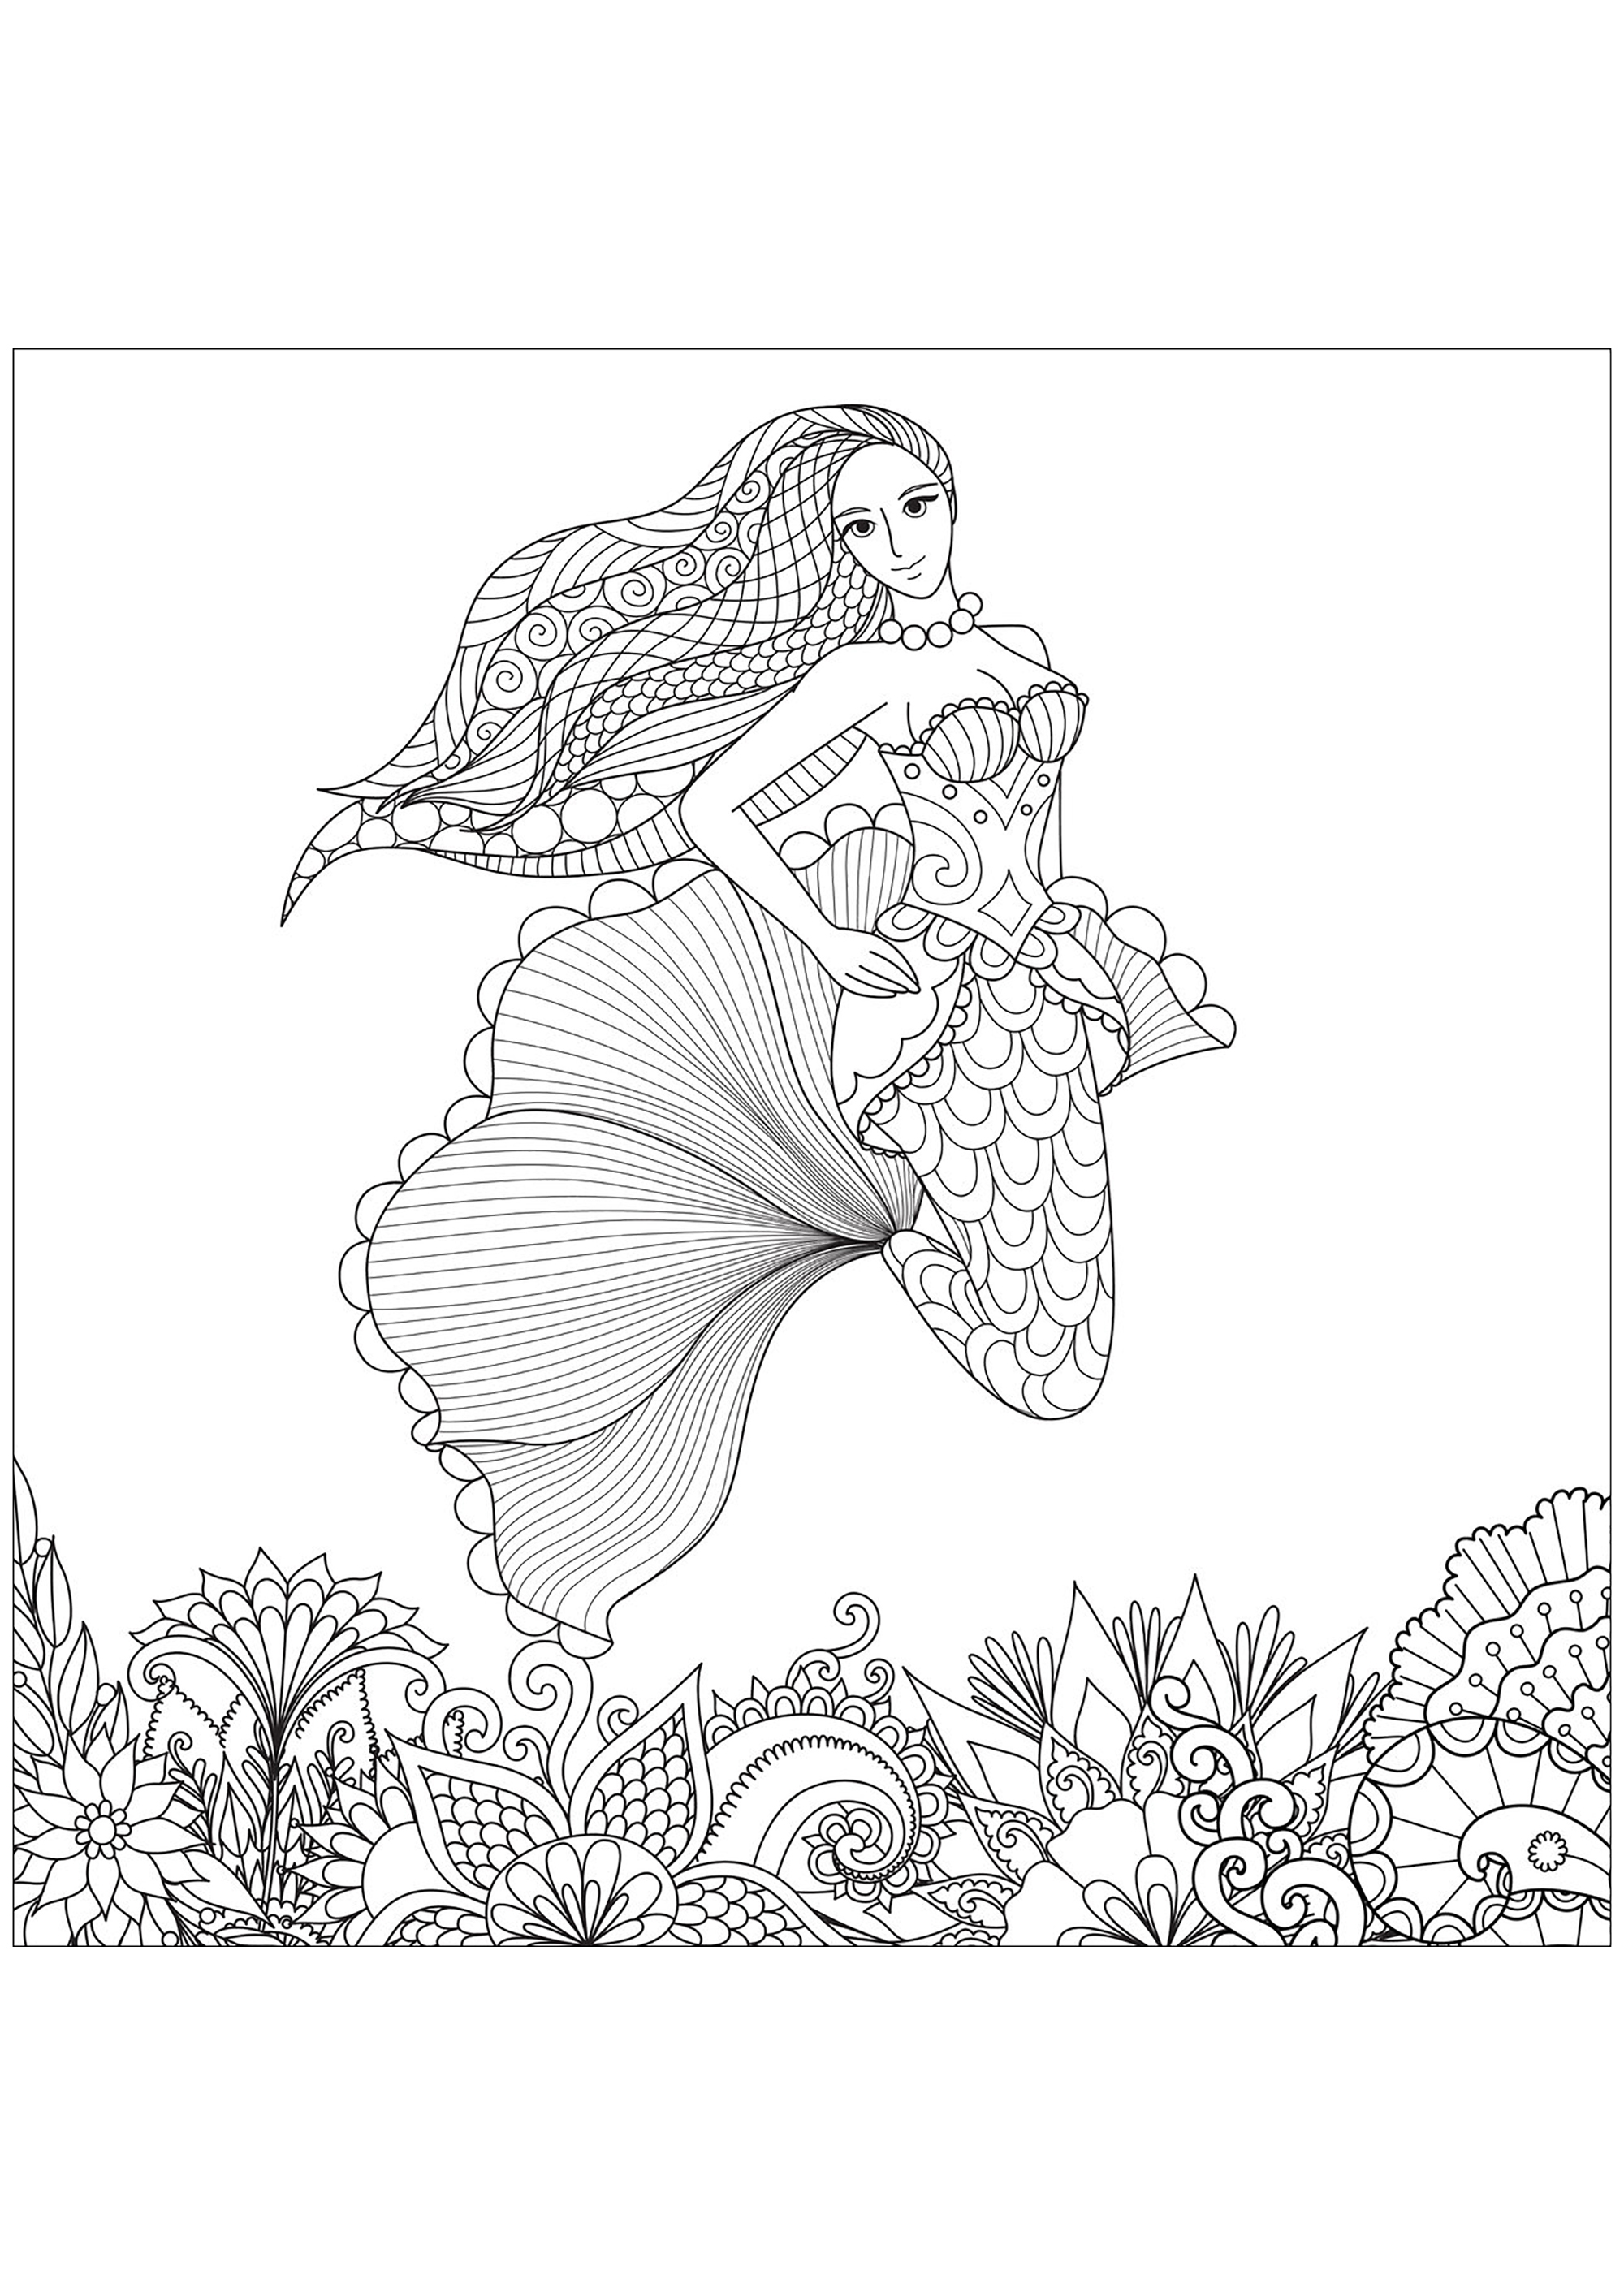 Jolie sirène avec de beaux motifs dans les cheveux, et des fonds marins dessinés avec des Zentangles, Source : 123rf   Artiste : Bimdeedee